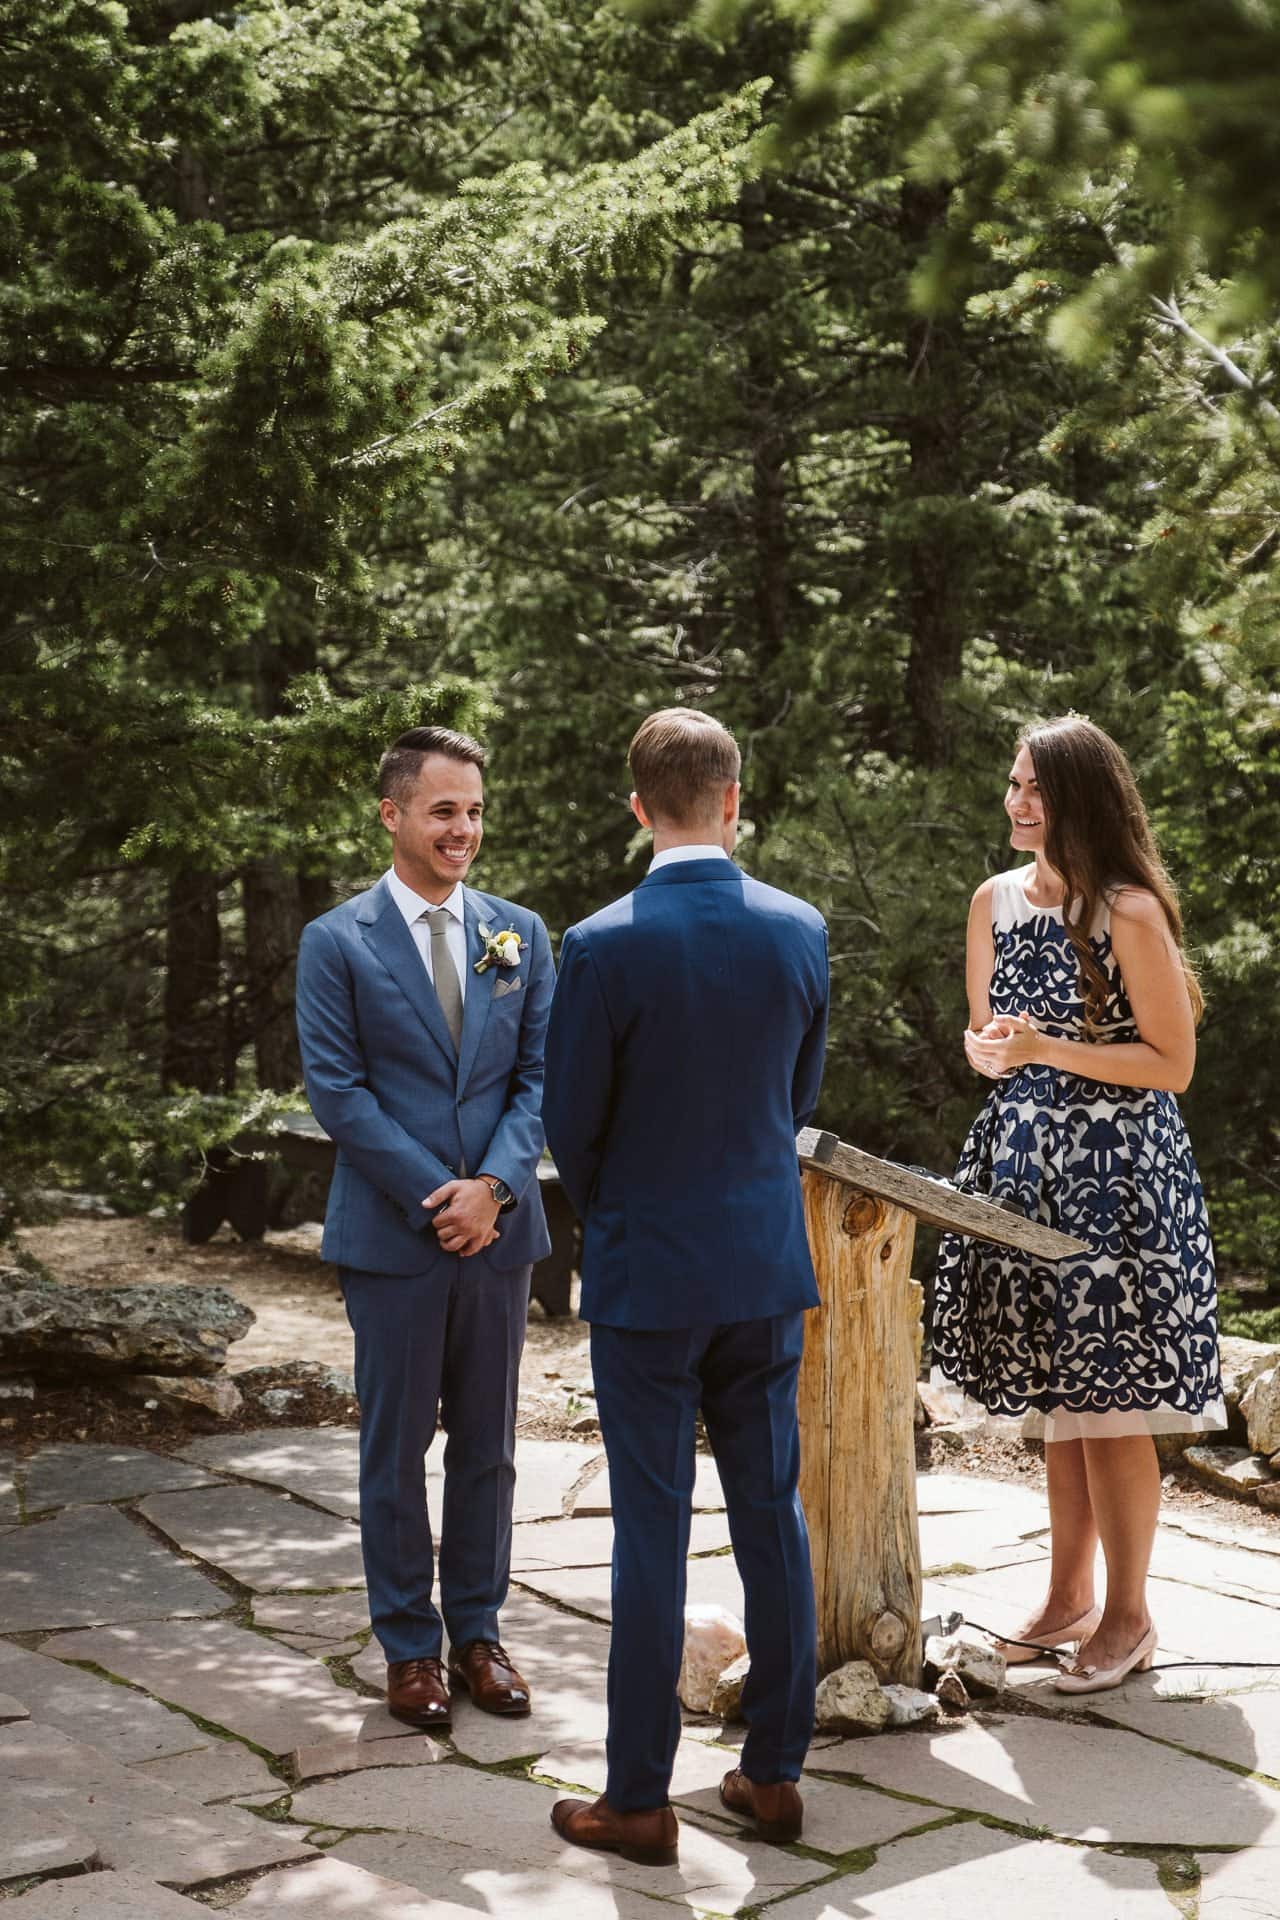 Wedding ceremony at Colorado Mountain Ranch outside Boulder, gay wedding in Colorado